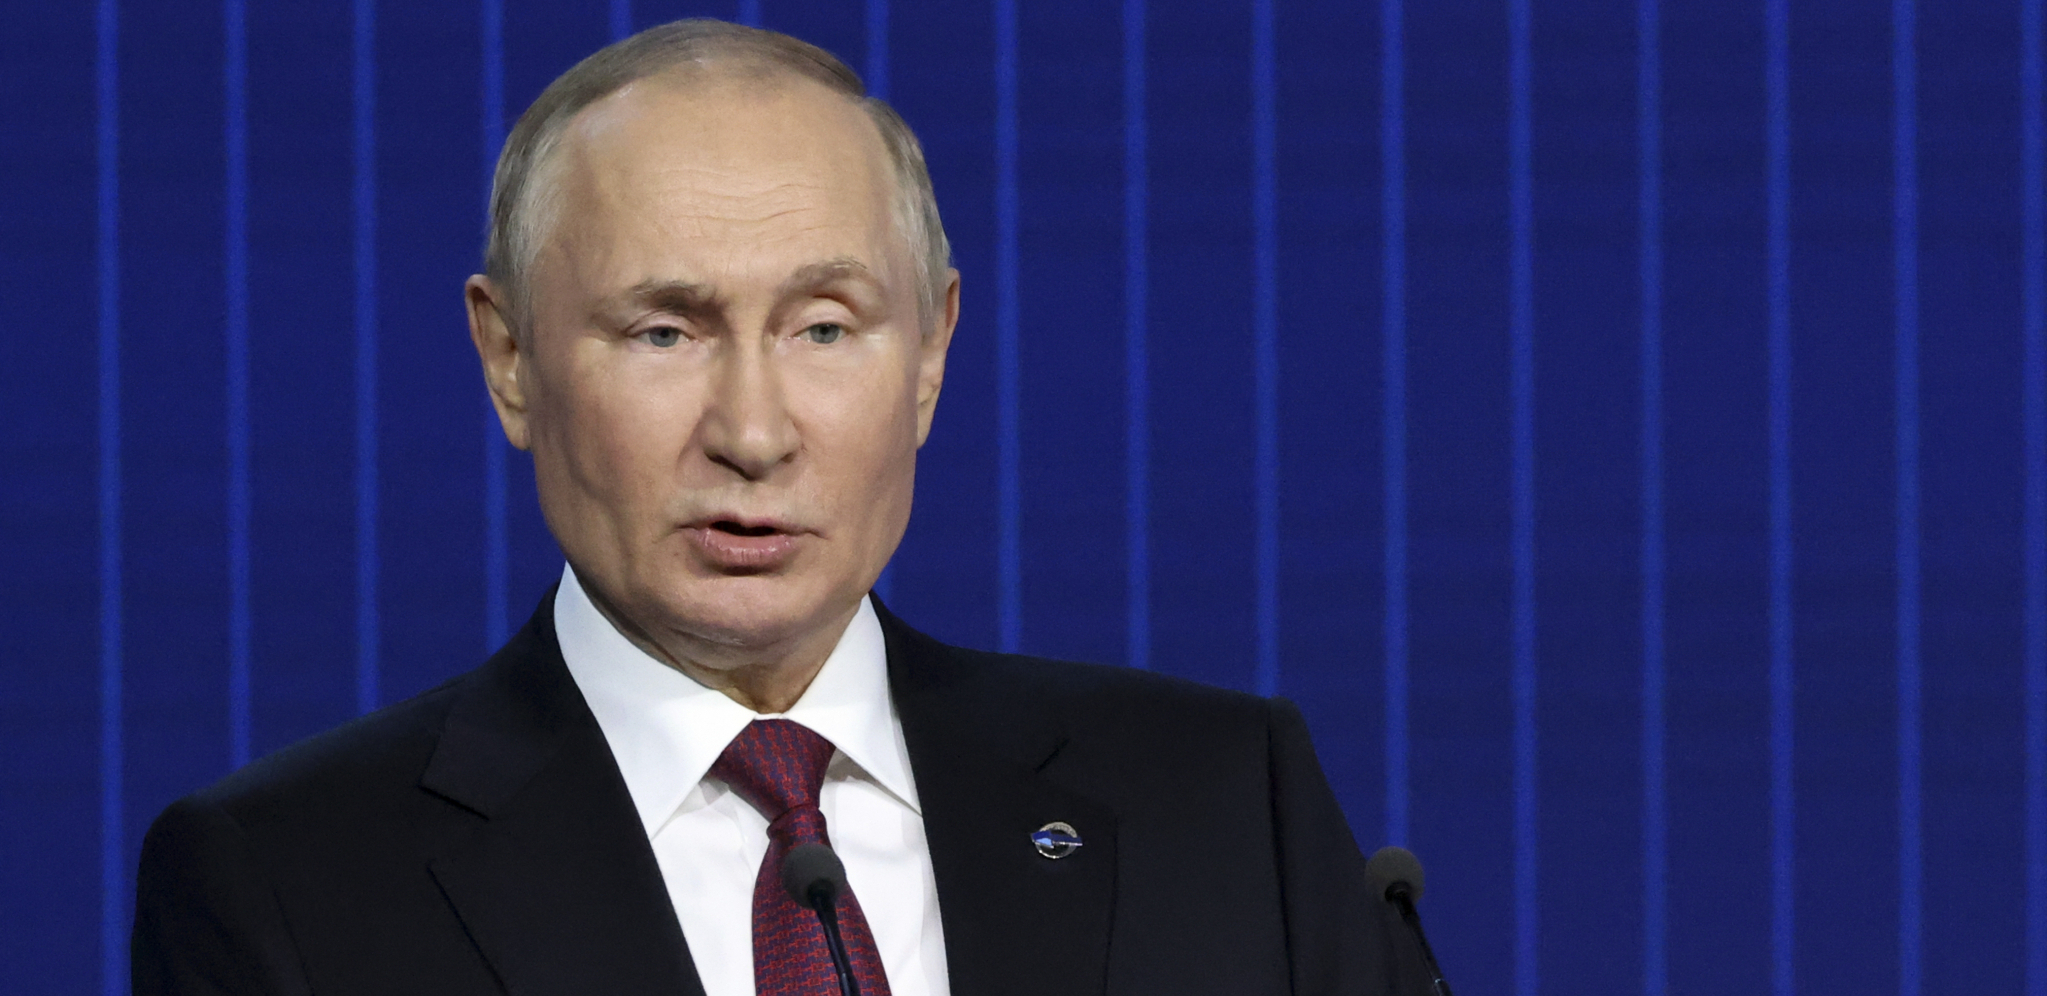 POČINJE VELIKA OBNOVA Putin u Mariupolju: Ovo je samo početak